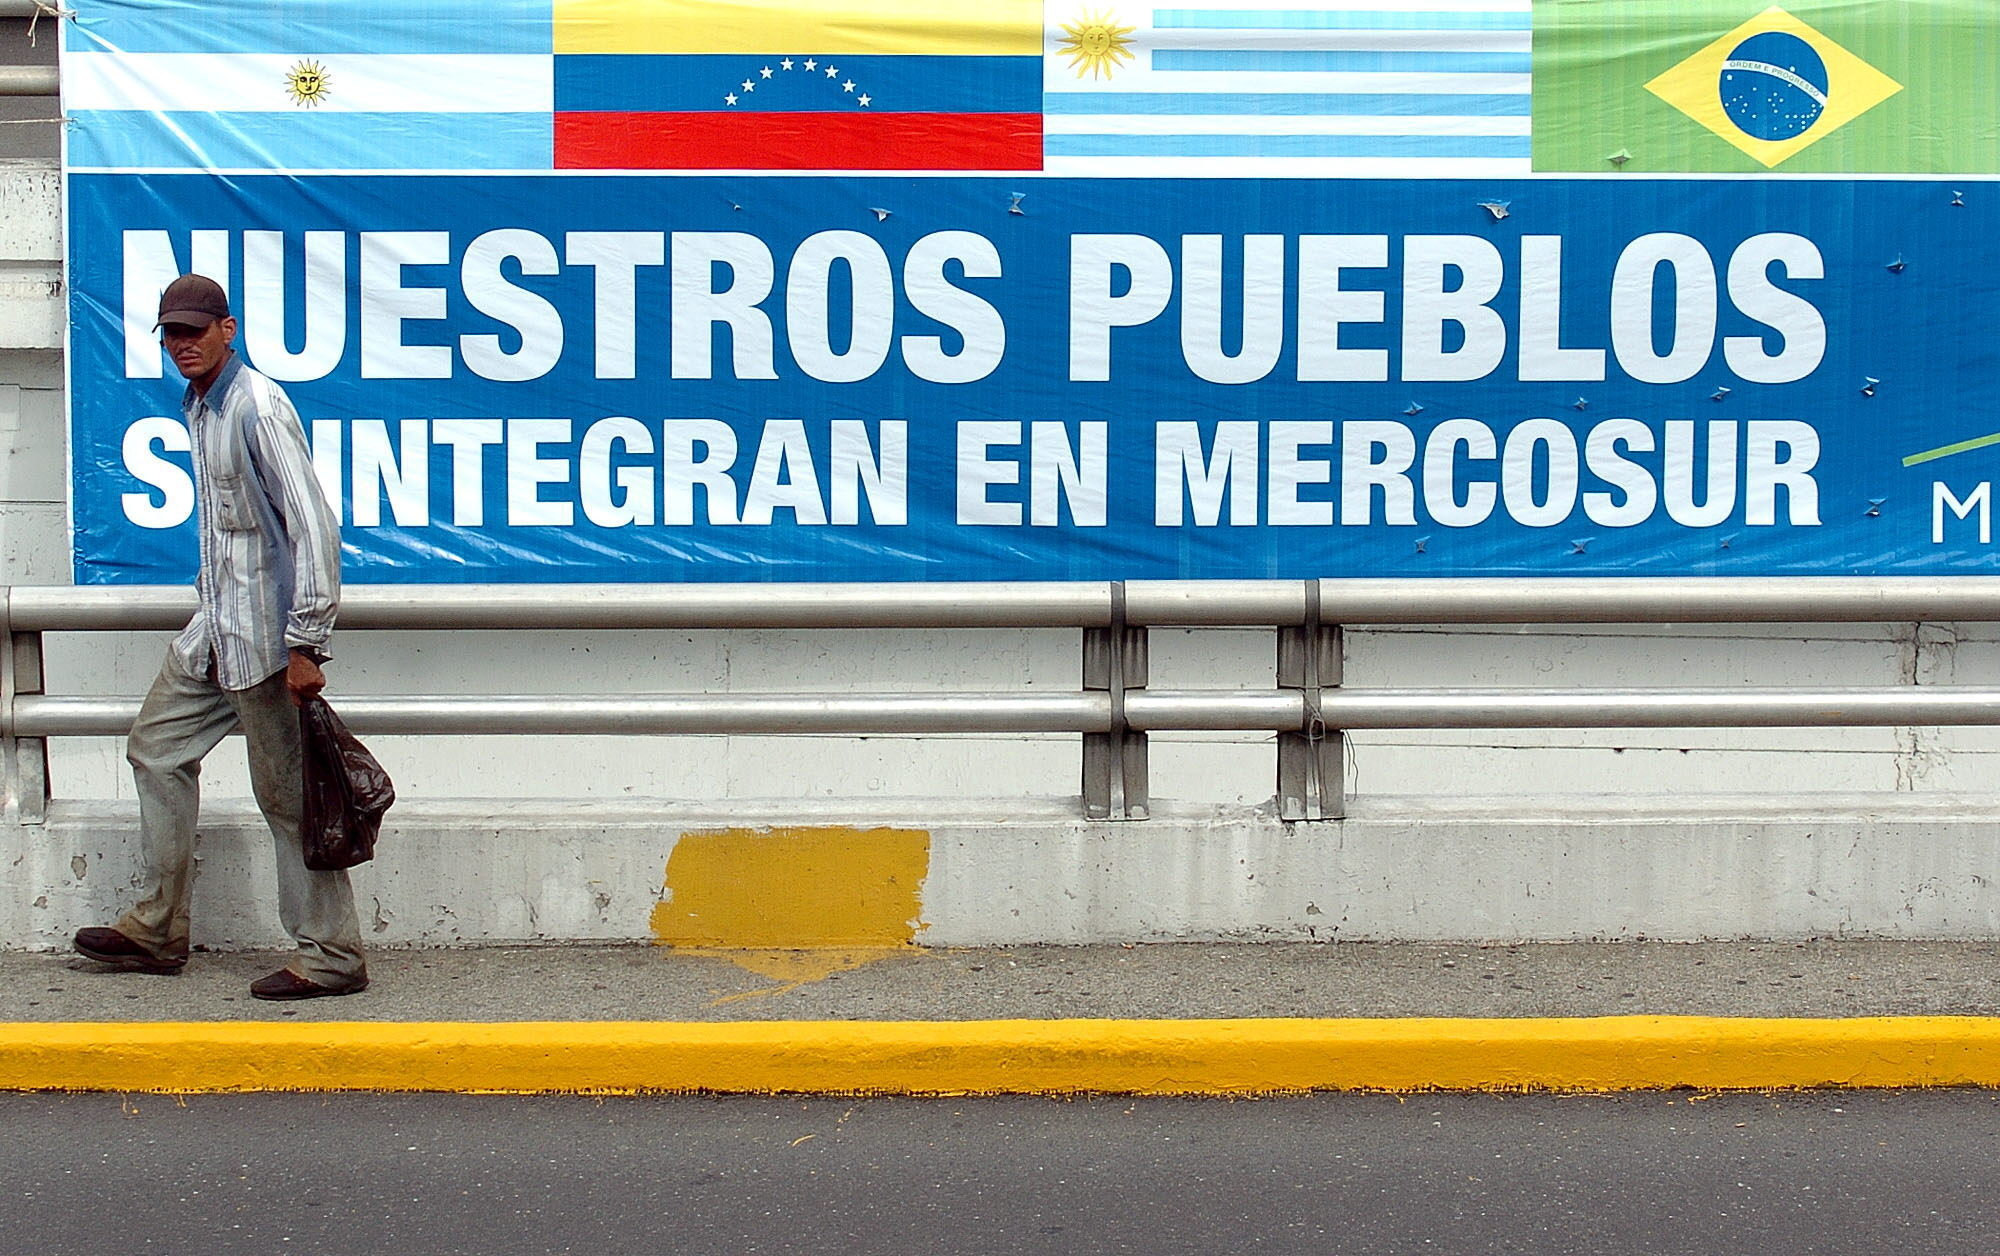 Cartel del Mercosur en Caracas, lugar donde los entonces presidentes Néstor Kirchner, Luiz Inácio Lula da Silva, Nicanor Duarte, Tabaré Vásquez, y  Hugo Chávez, firmaron el Protocolo de Adhesión de Venezuela al Mercosur en 2006.